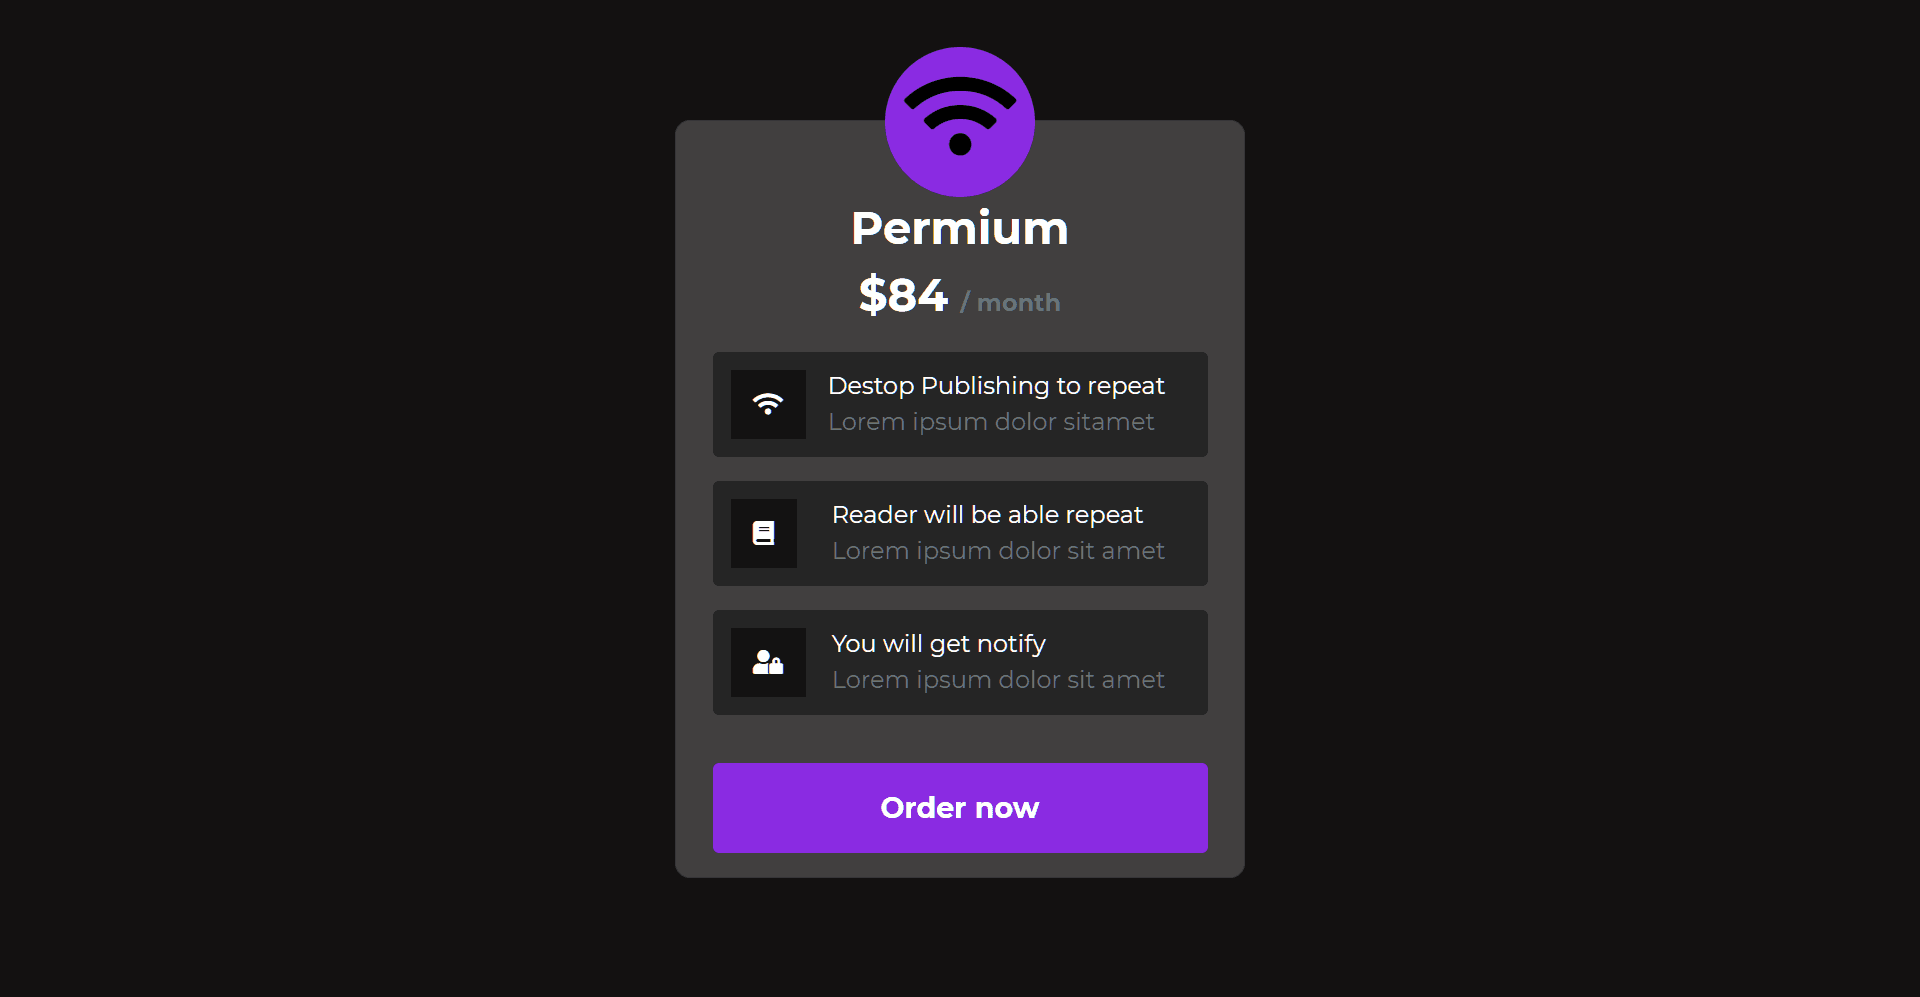 Premium subscription plan details